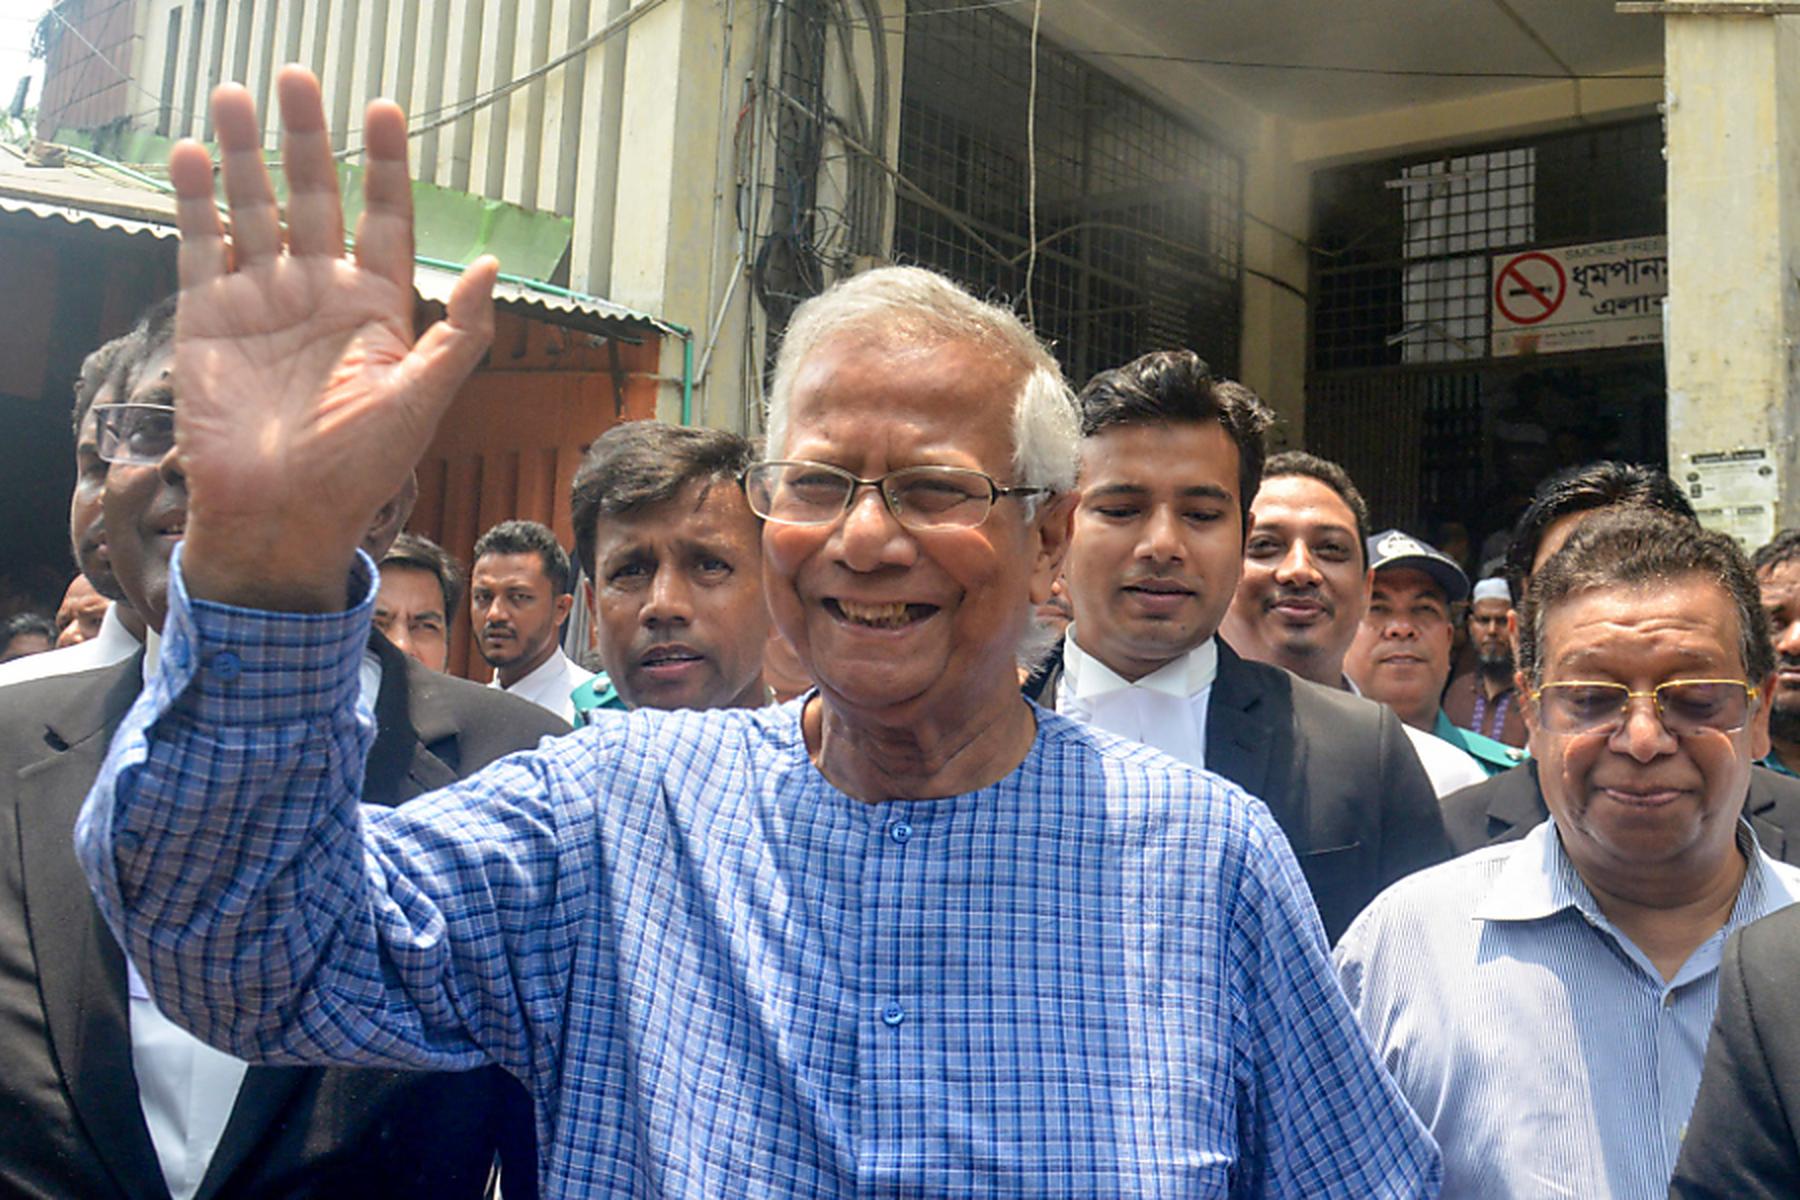 Dhaka: Yunus als Interimspremier in Bangladesch im Gespräch